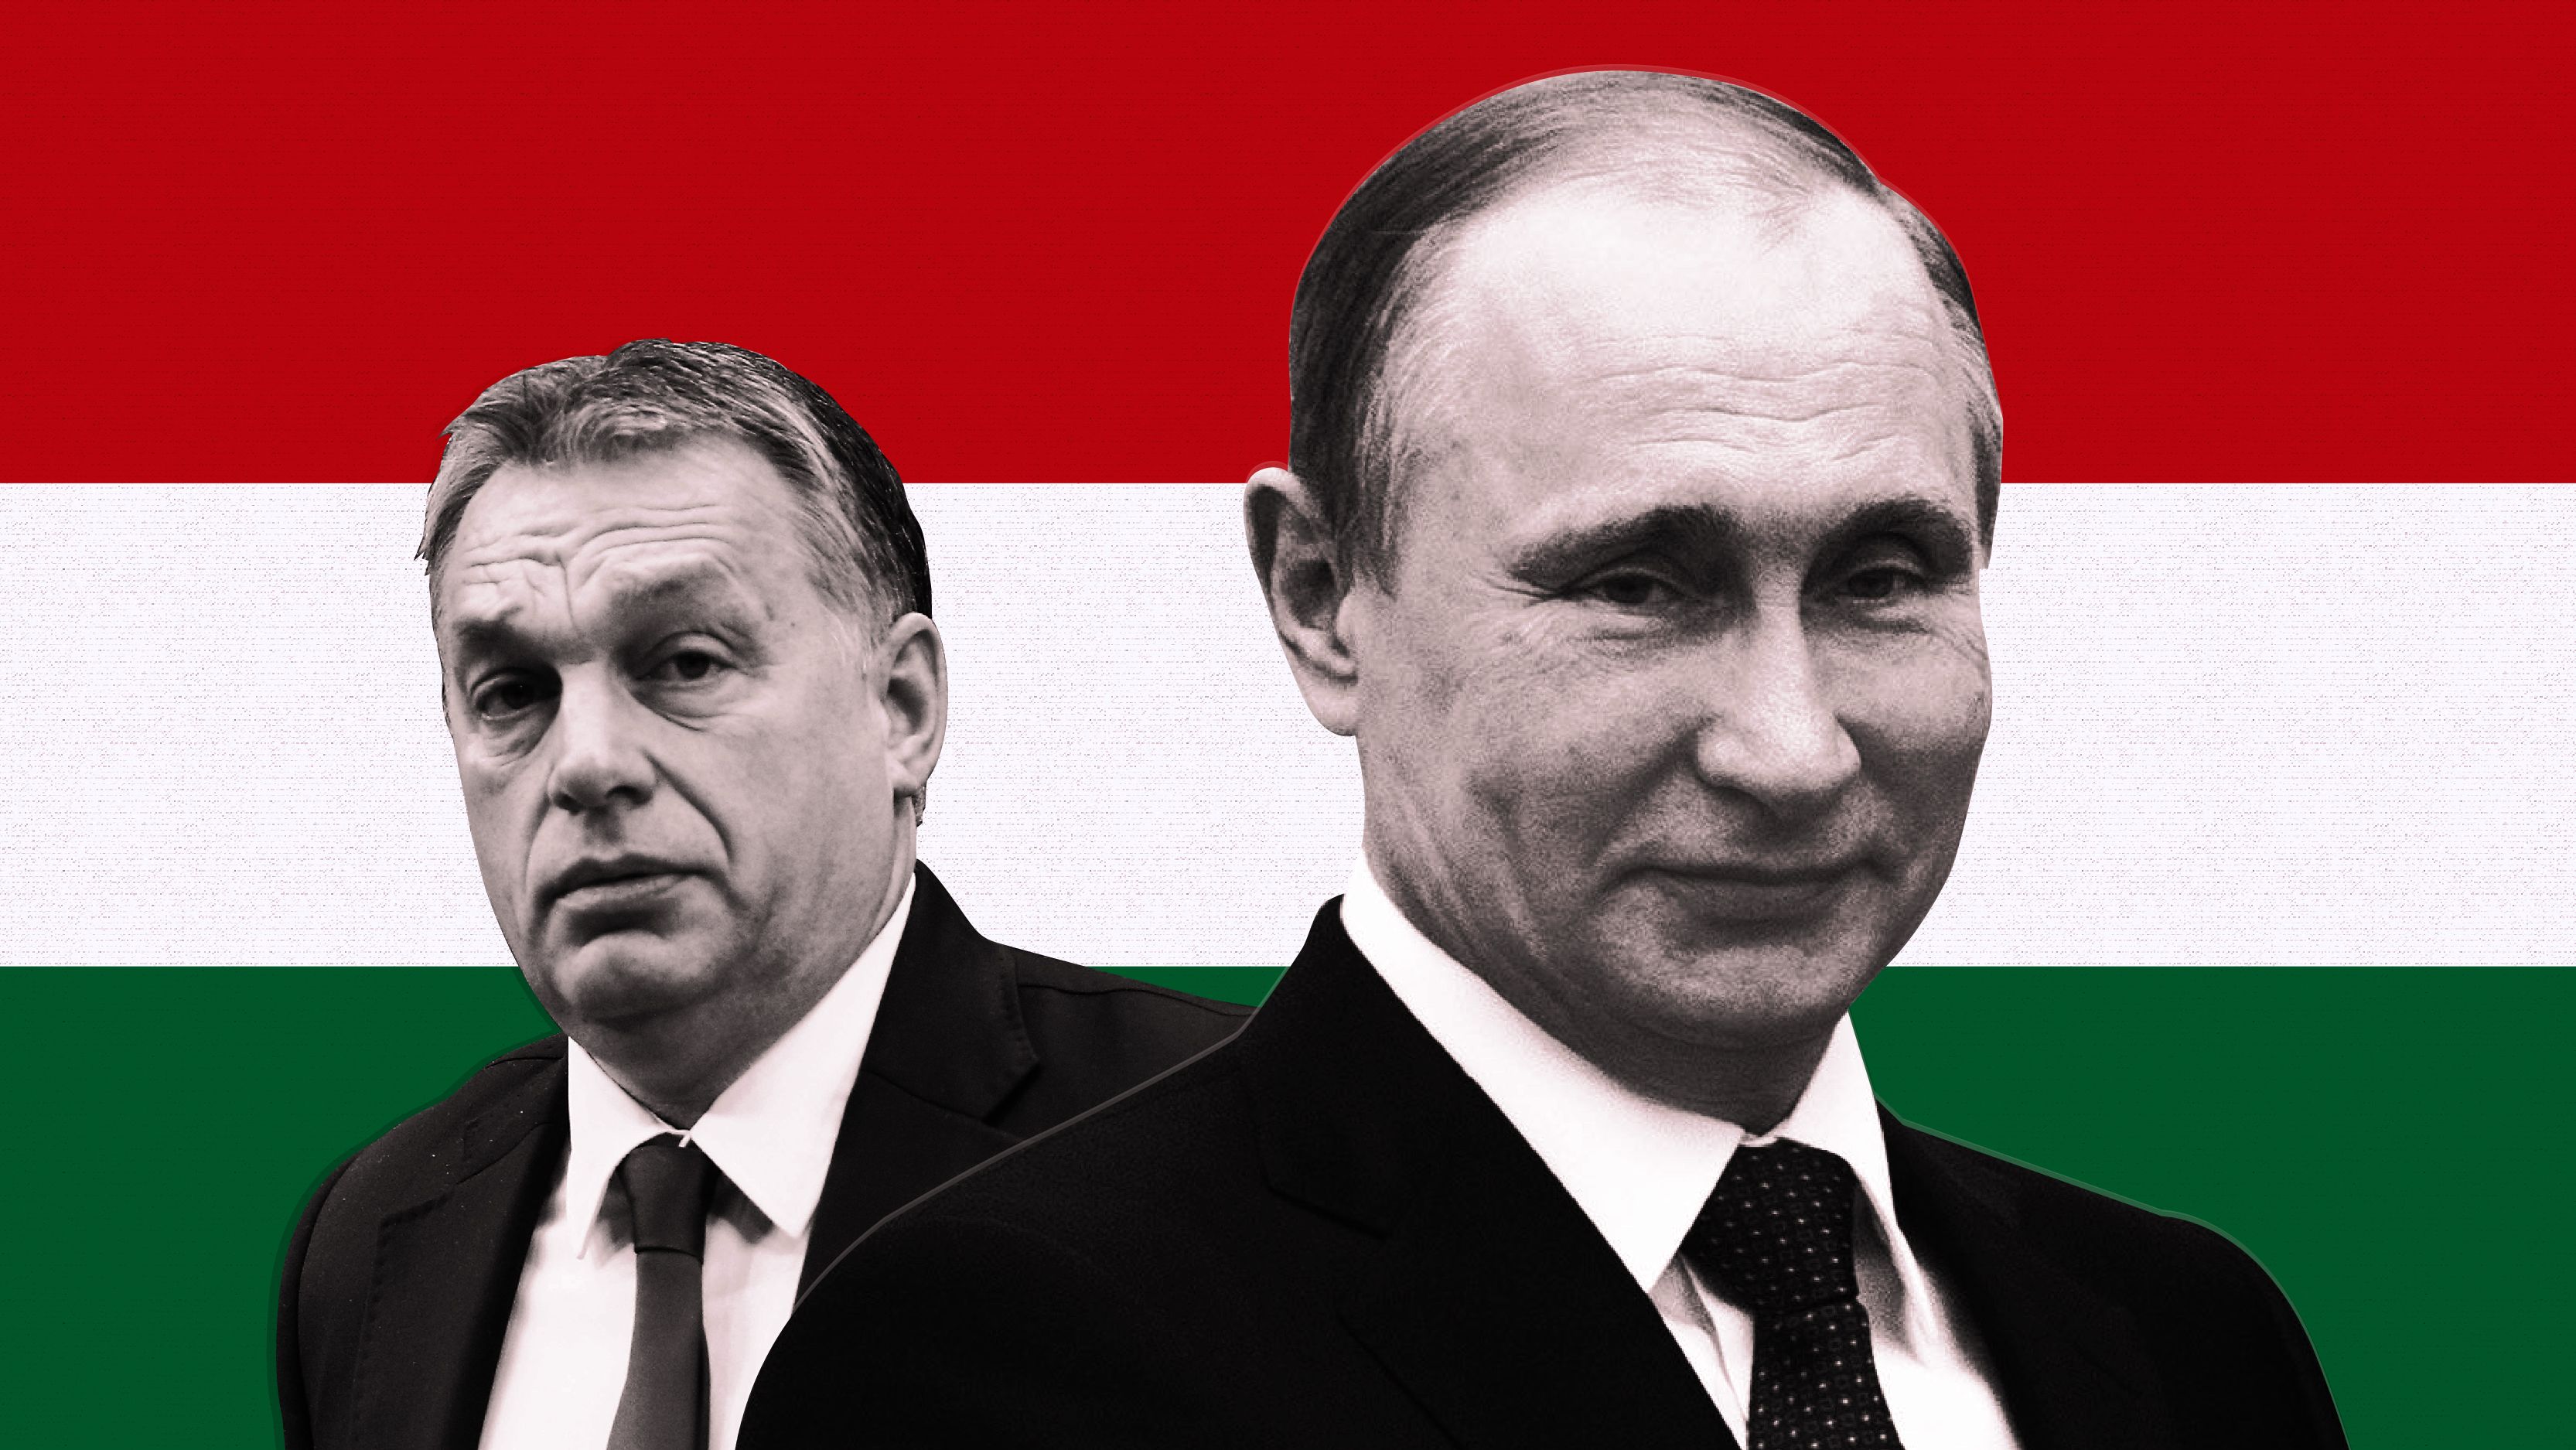 Putin mənim üçün hərbi cinayətkar deyil - Orban